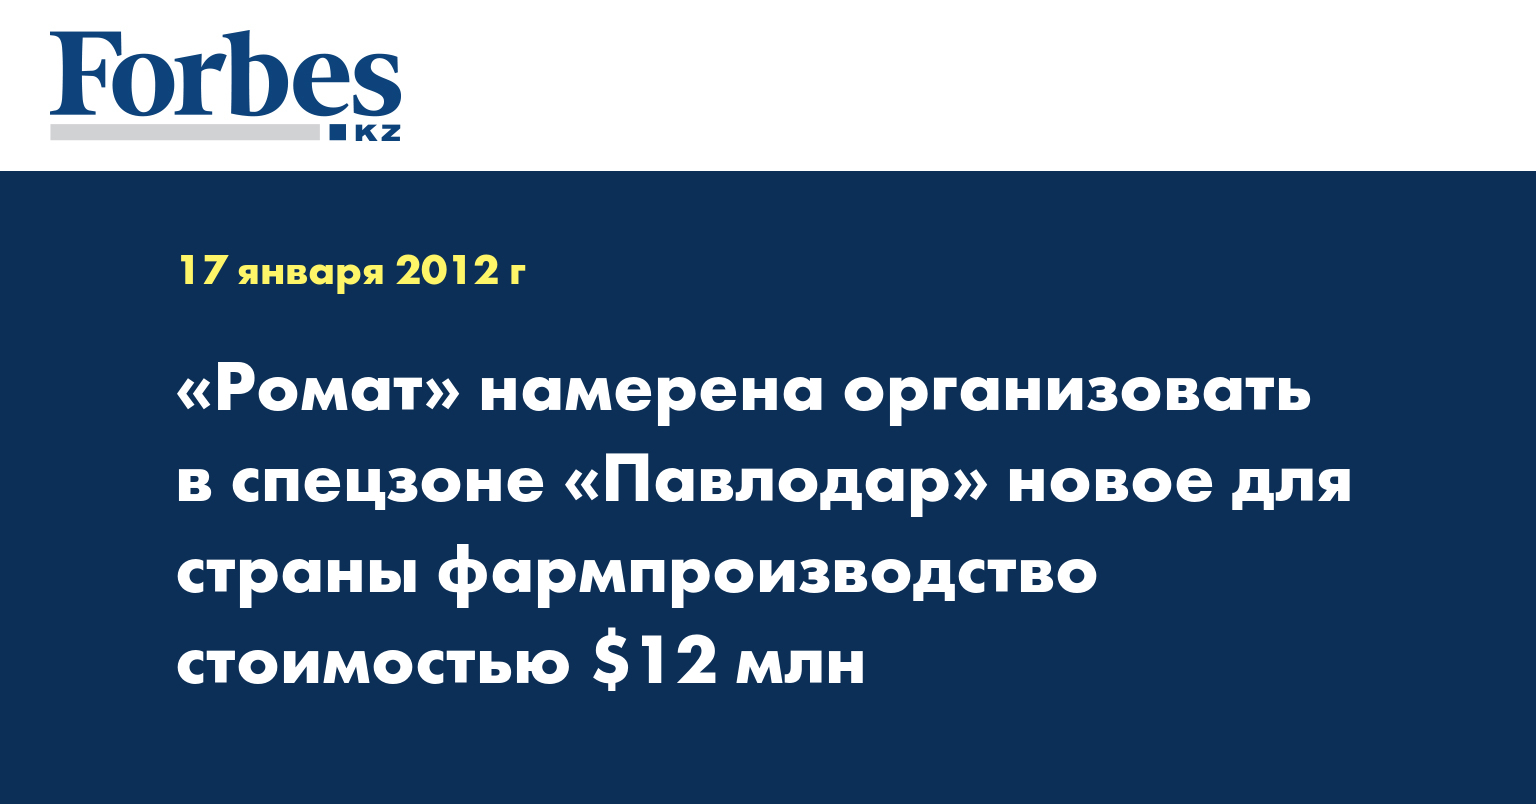 «Ромат» намерена организовать в спецзоне «Павлодар» новое для страны фармпроизводство стоимостью $12 млн